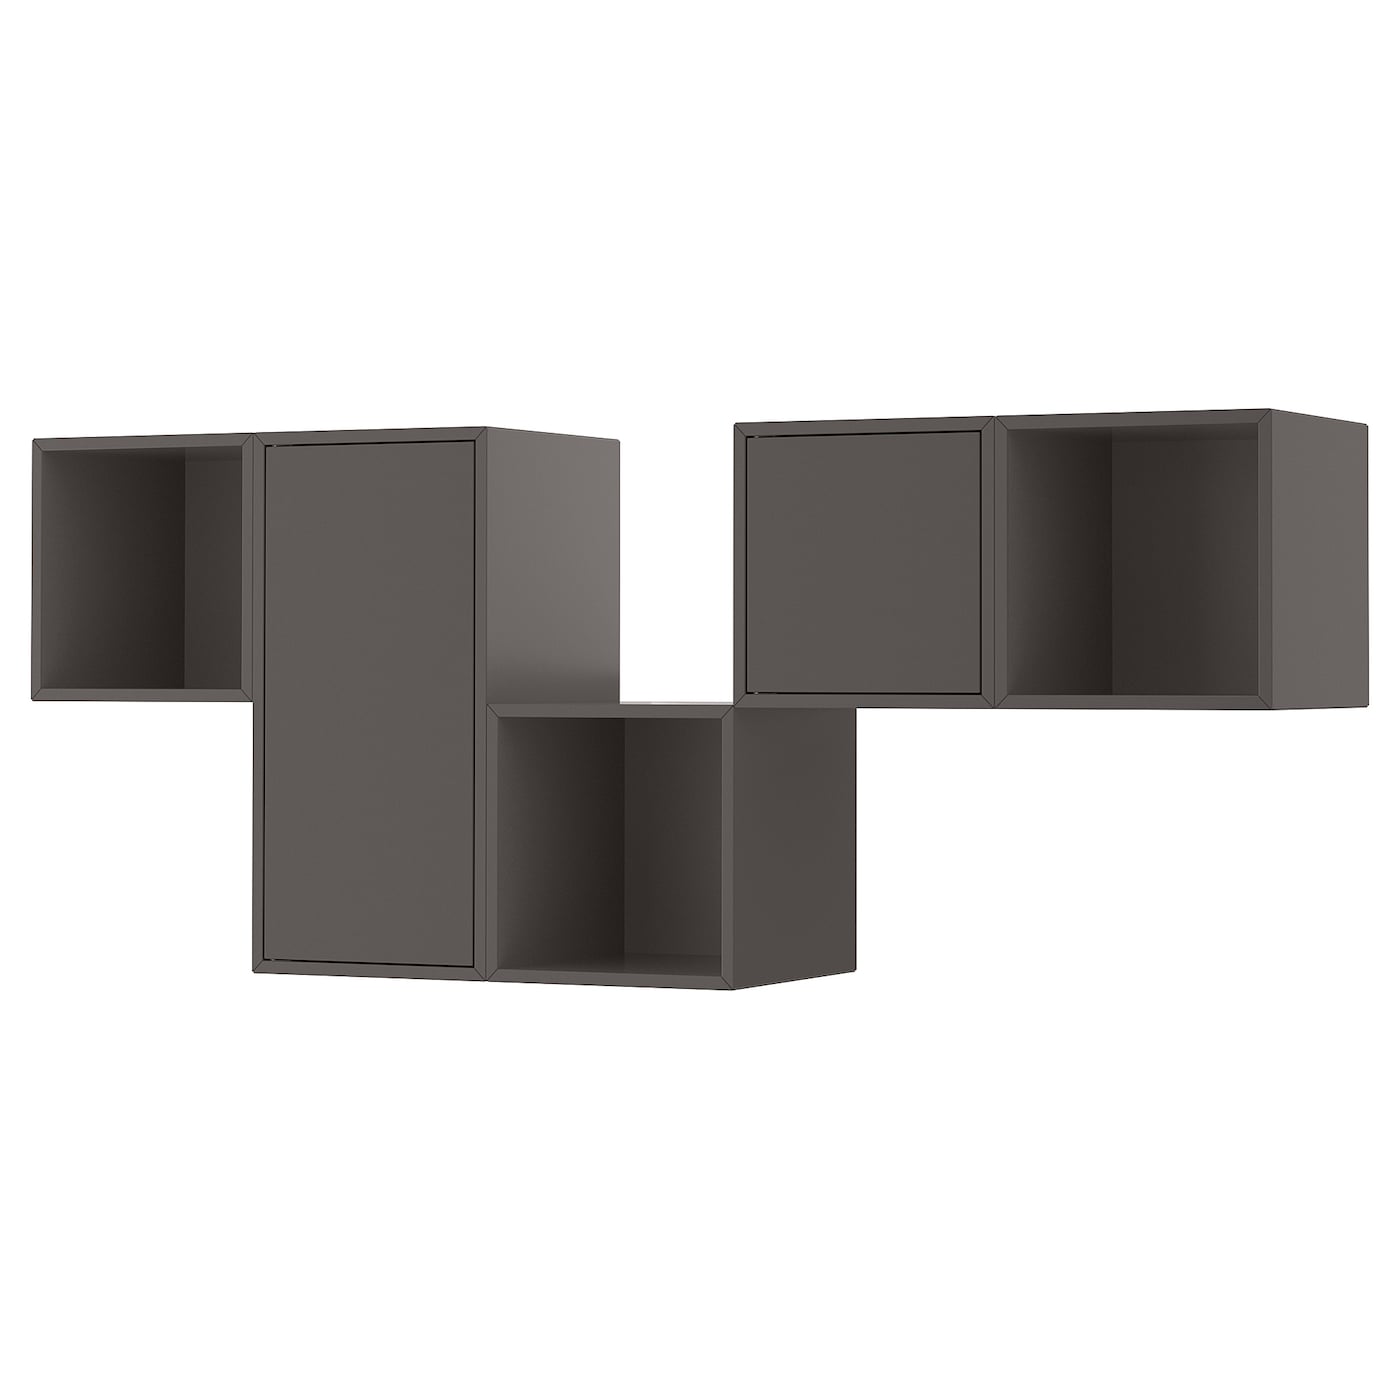 Комбинация с навесным шкафом - IKEA EKET, 175x35x70 см, темно-серый, ЭКЕТ ИКЕА